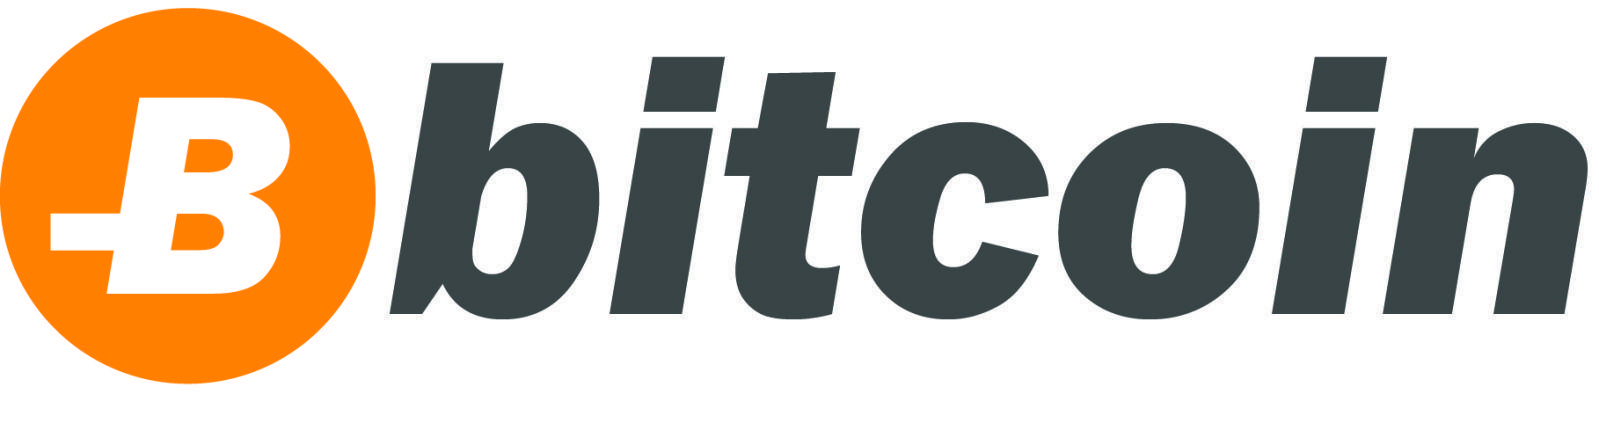 Lightcoin Logo - Bitcoin logo/symbol needs a redesign : Bitcoin